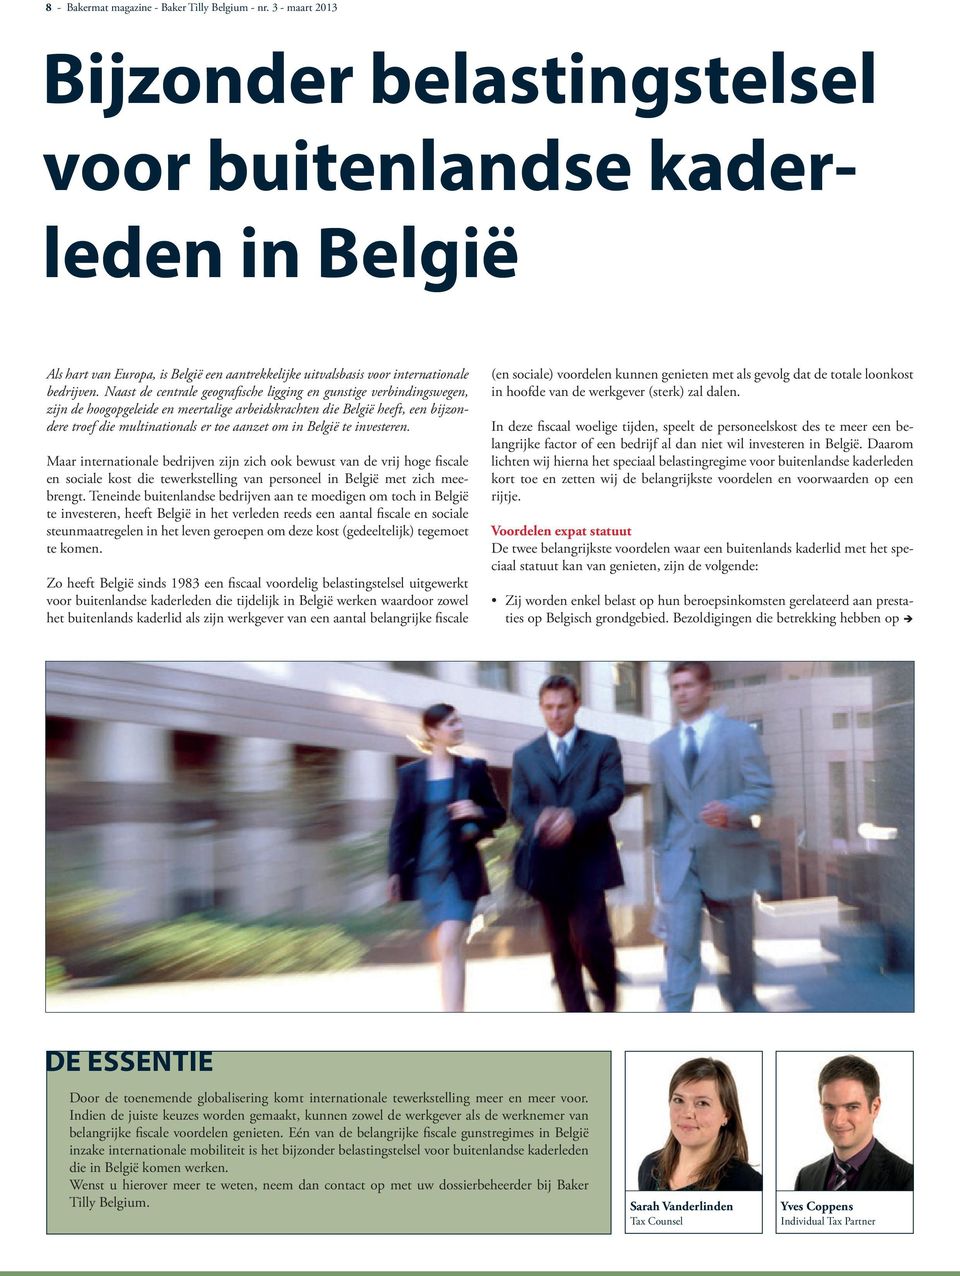 Naast de centrale geografische ligging en gunstige verbindingswegen, zijn de hoogopgeleide en meertalige arbeidskrachten die België heeft, een bijzondere troef die multinationals er toe aanzet om in